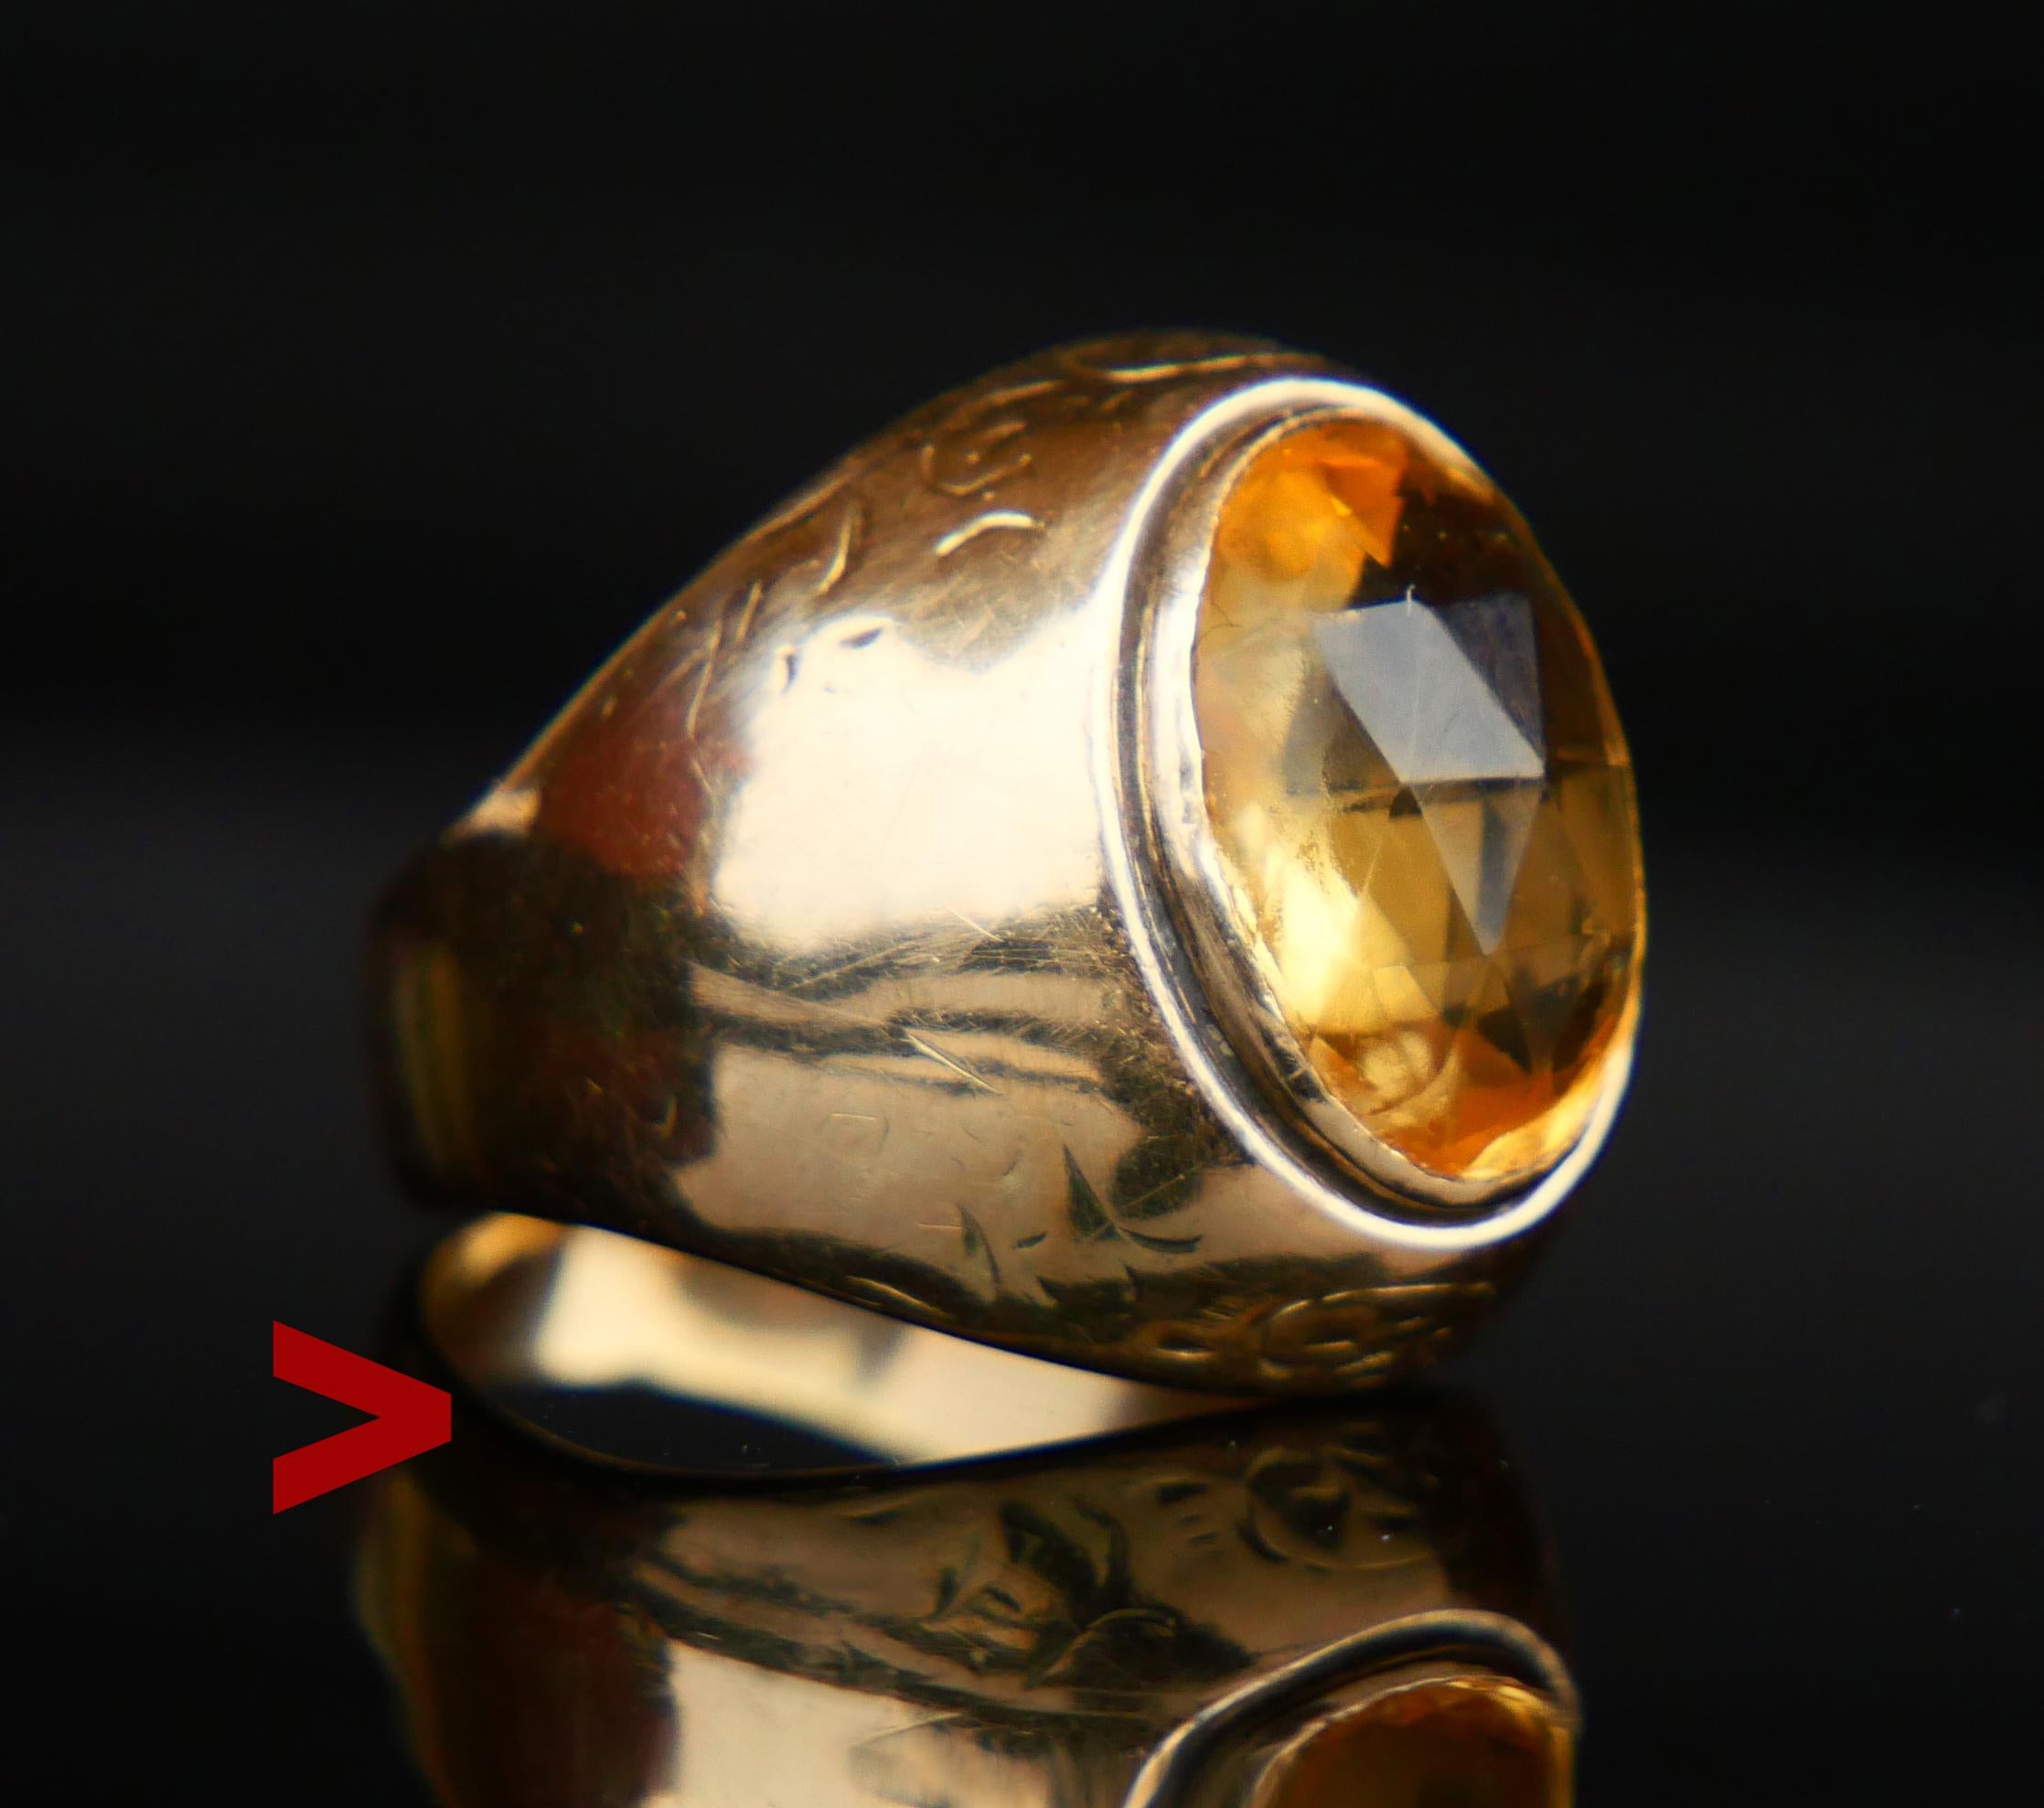 BBeautiful Ring für die weibliche Hand.
Toller dänischer Ring aus den 1920er bis 1940er Jahren. Breites Band und üppige Krone mit Briolette / Rosenschliff aus natürlichem gelben Citrin 12 mm x 10 mm x 5,5 mm tief / ca. 5,5 ct.

Gepunzt: JØL